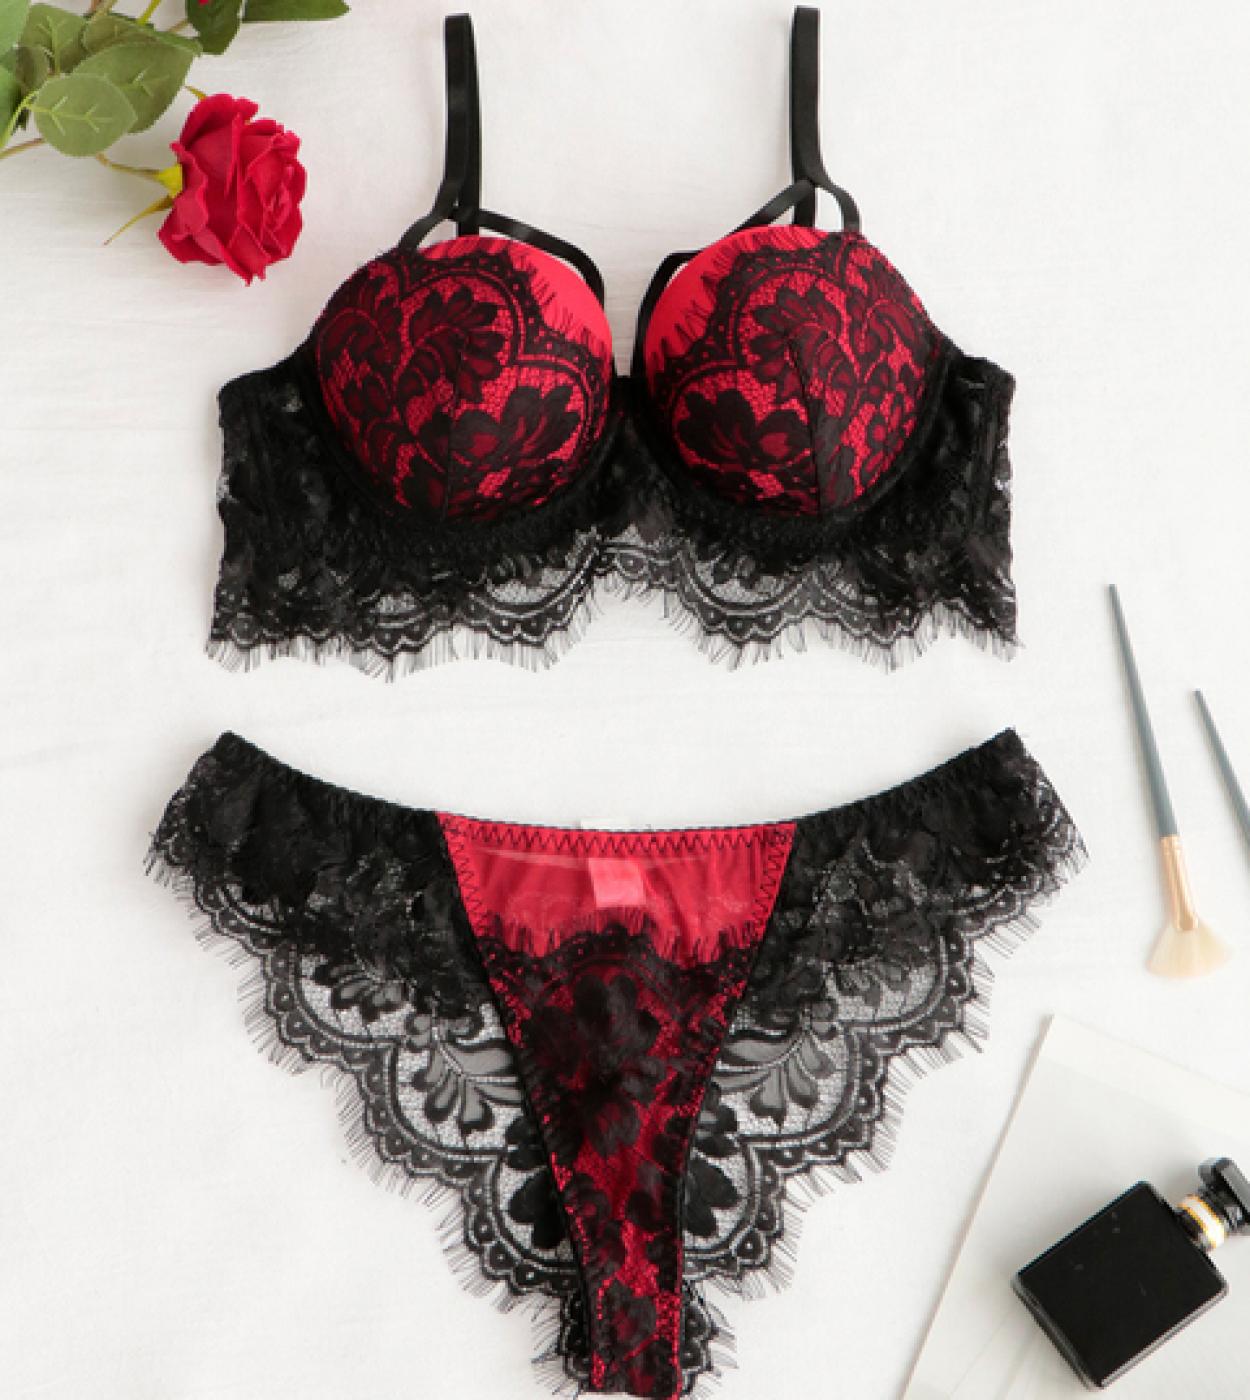 https://d3en8d2cl9etnr.cloudfront.net/1012299-large_default/ellolace-valentines-day-lingerie-lace-padded-push-up-bras-luxury-fema.jpg